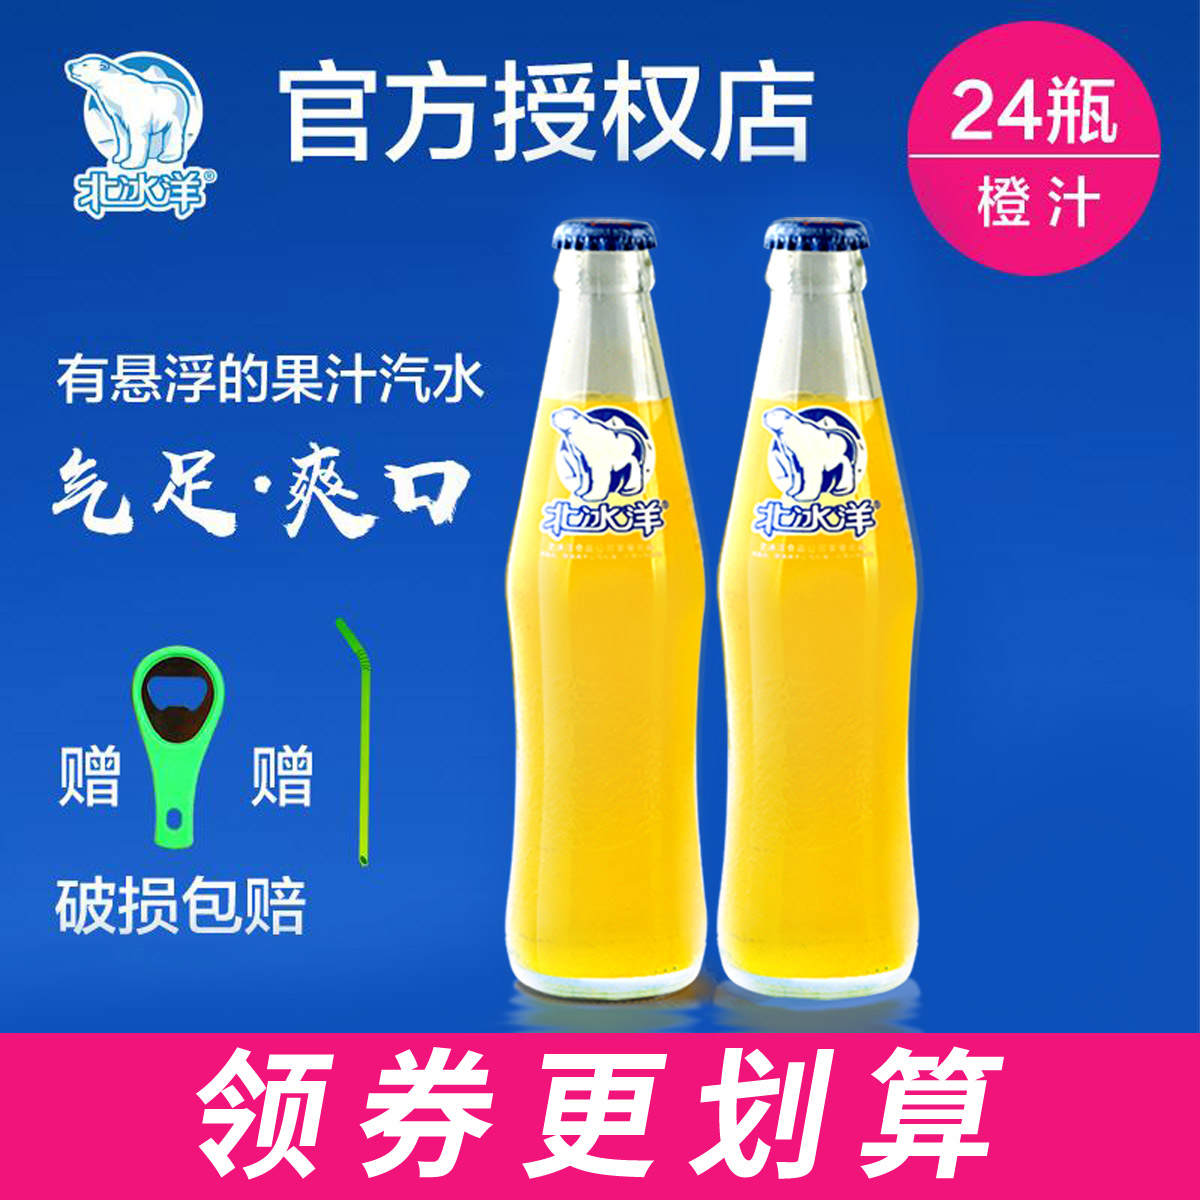 正常发货 北冰洋汽水橙汁汽水24瓶老北京汽水送吸管开瓶器